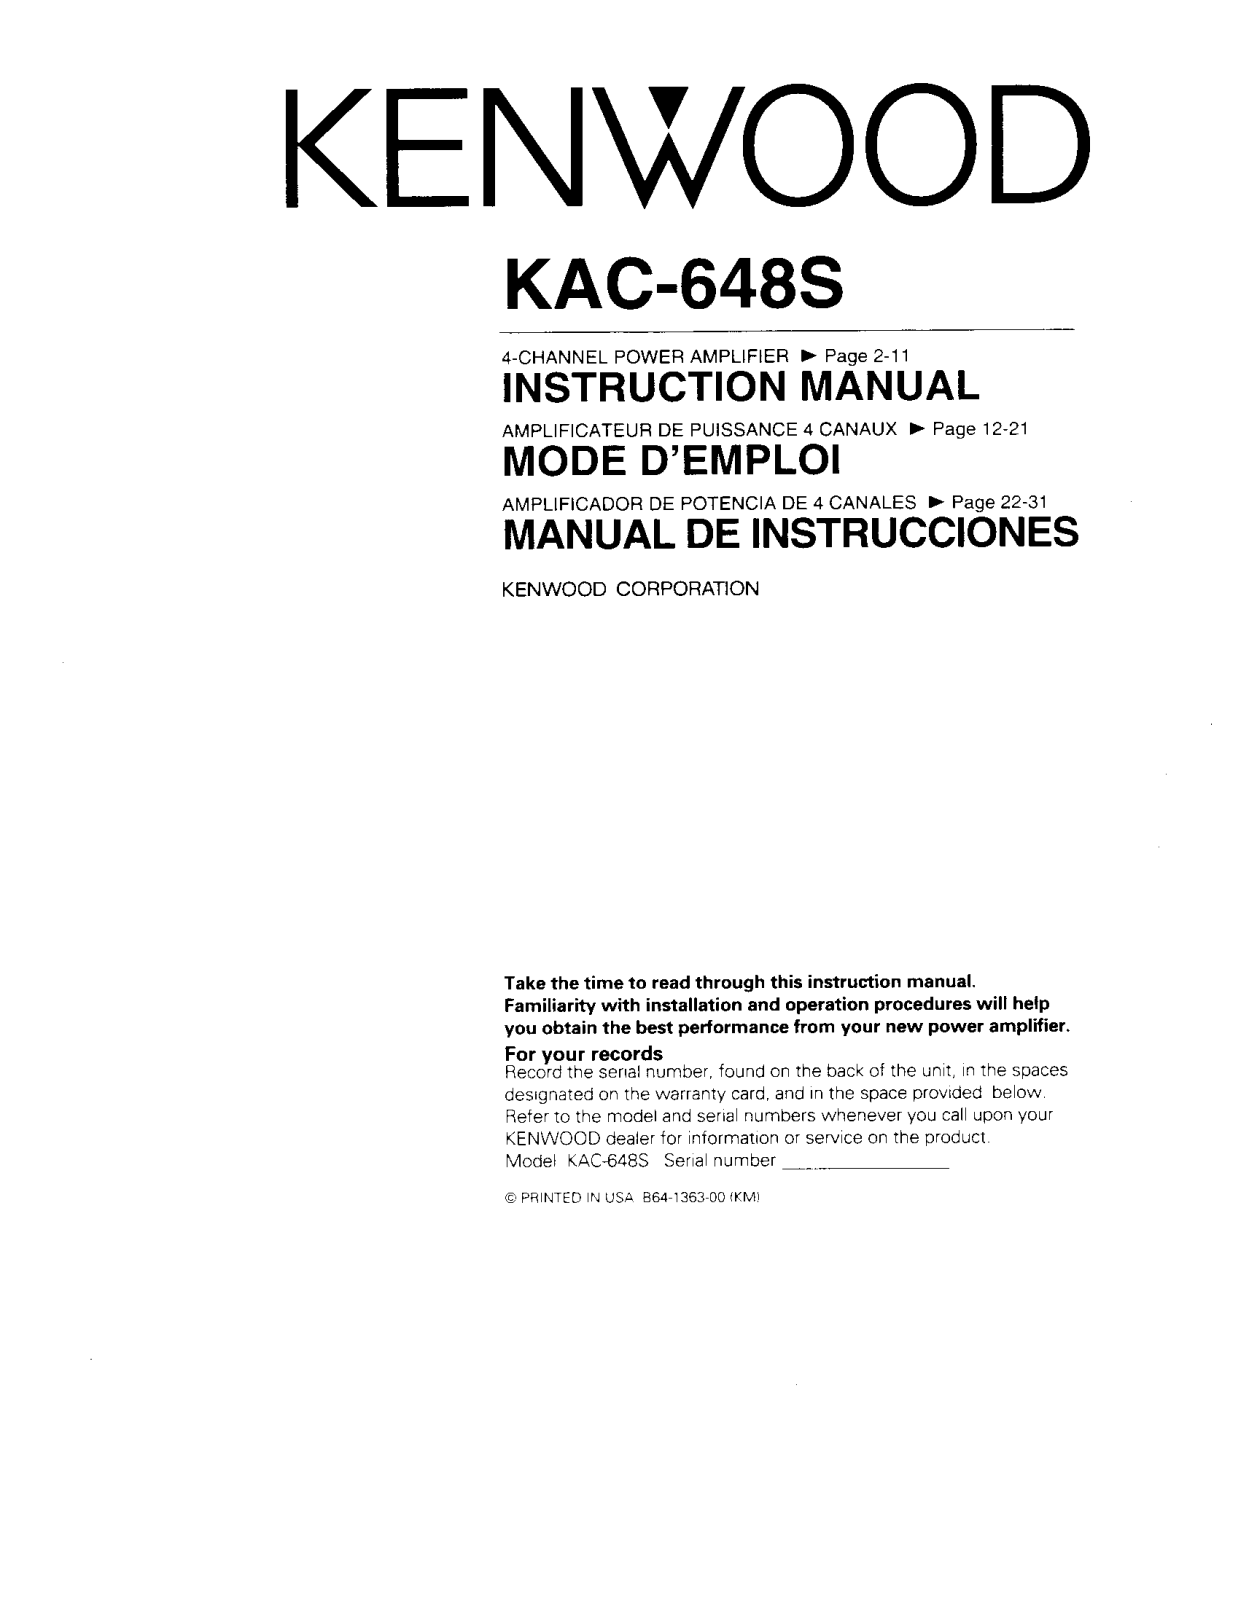 Kenwood KAC-648s Owner's Manual